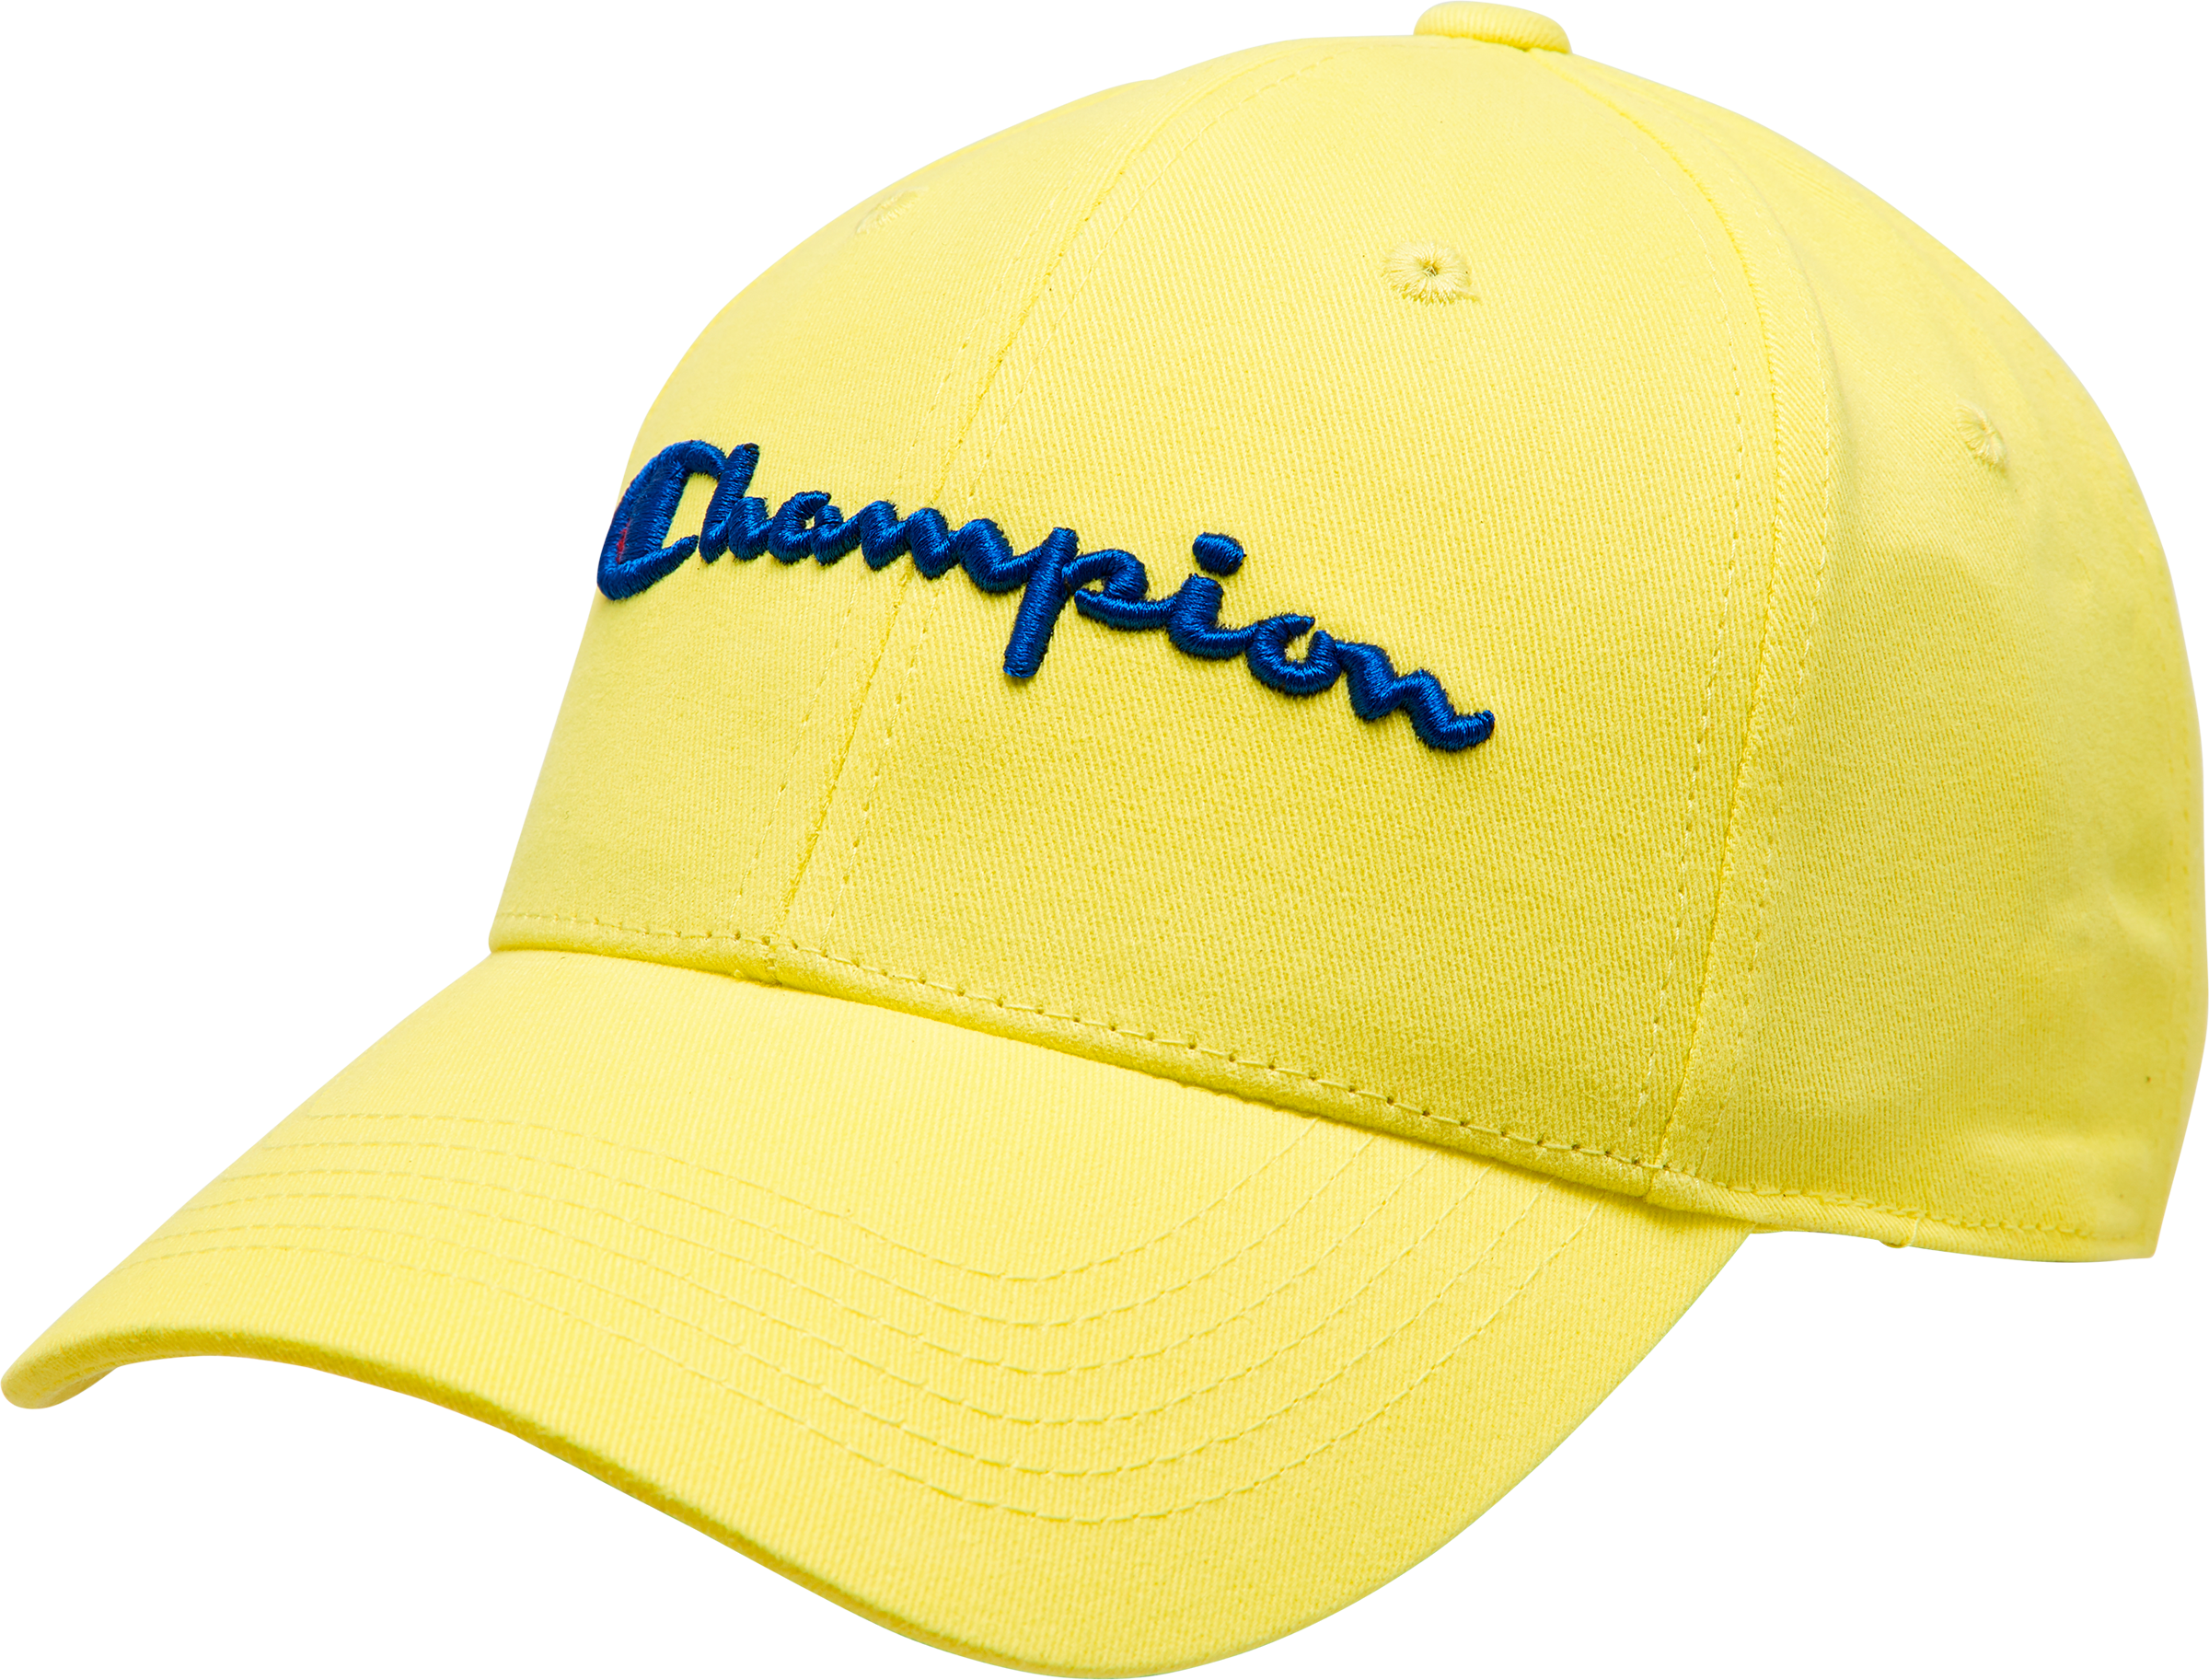 champion yellow hat